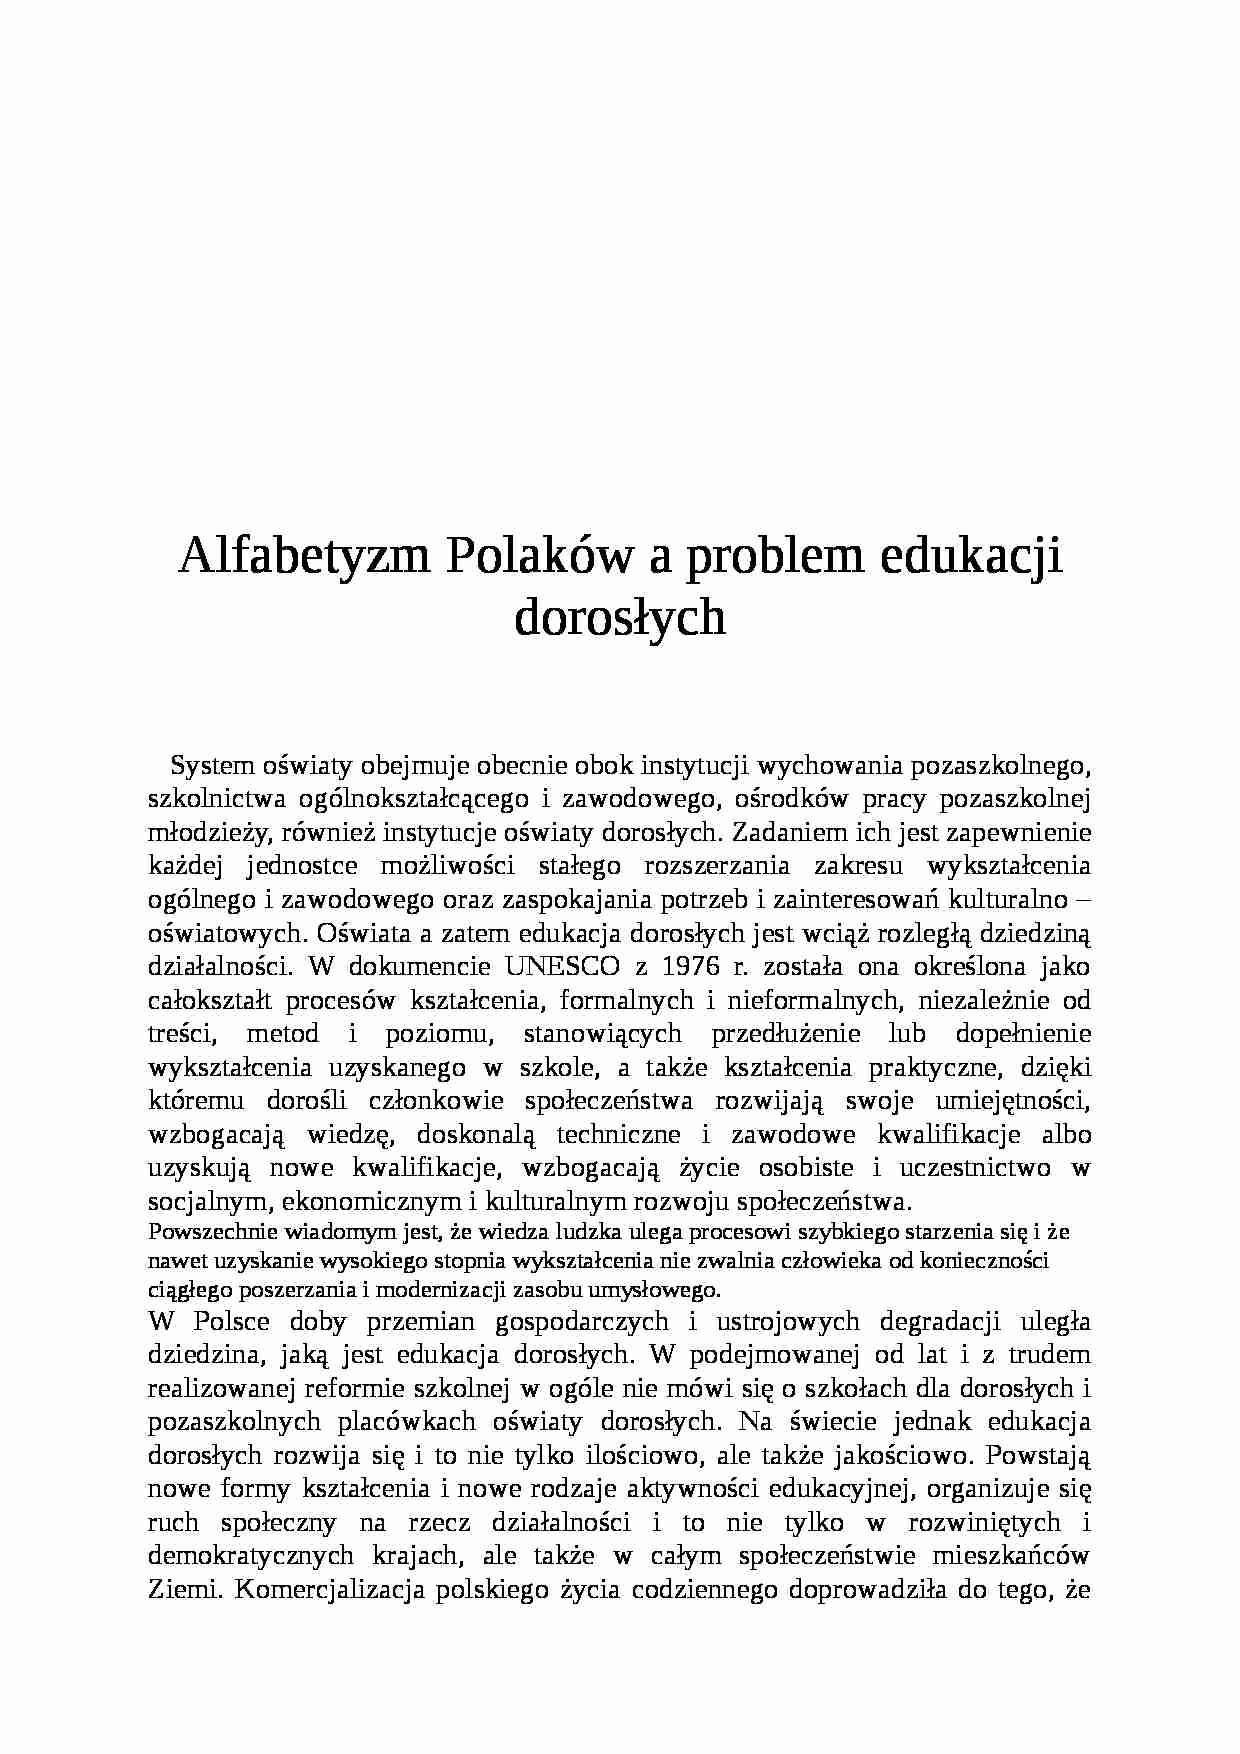 Alfabetyzm Polaków a problem edukacji dorosłych- pedagogika - strona 1